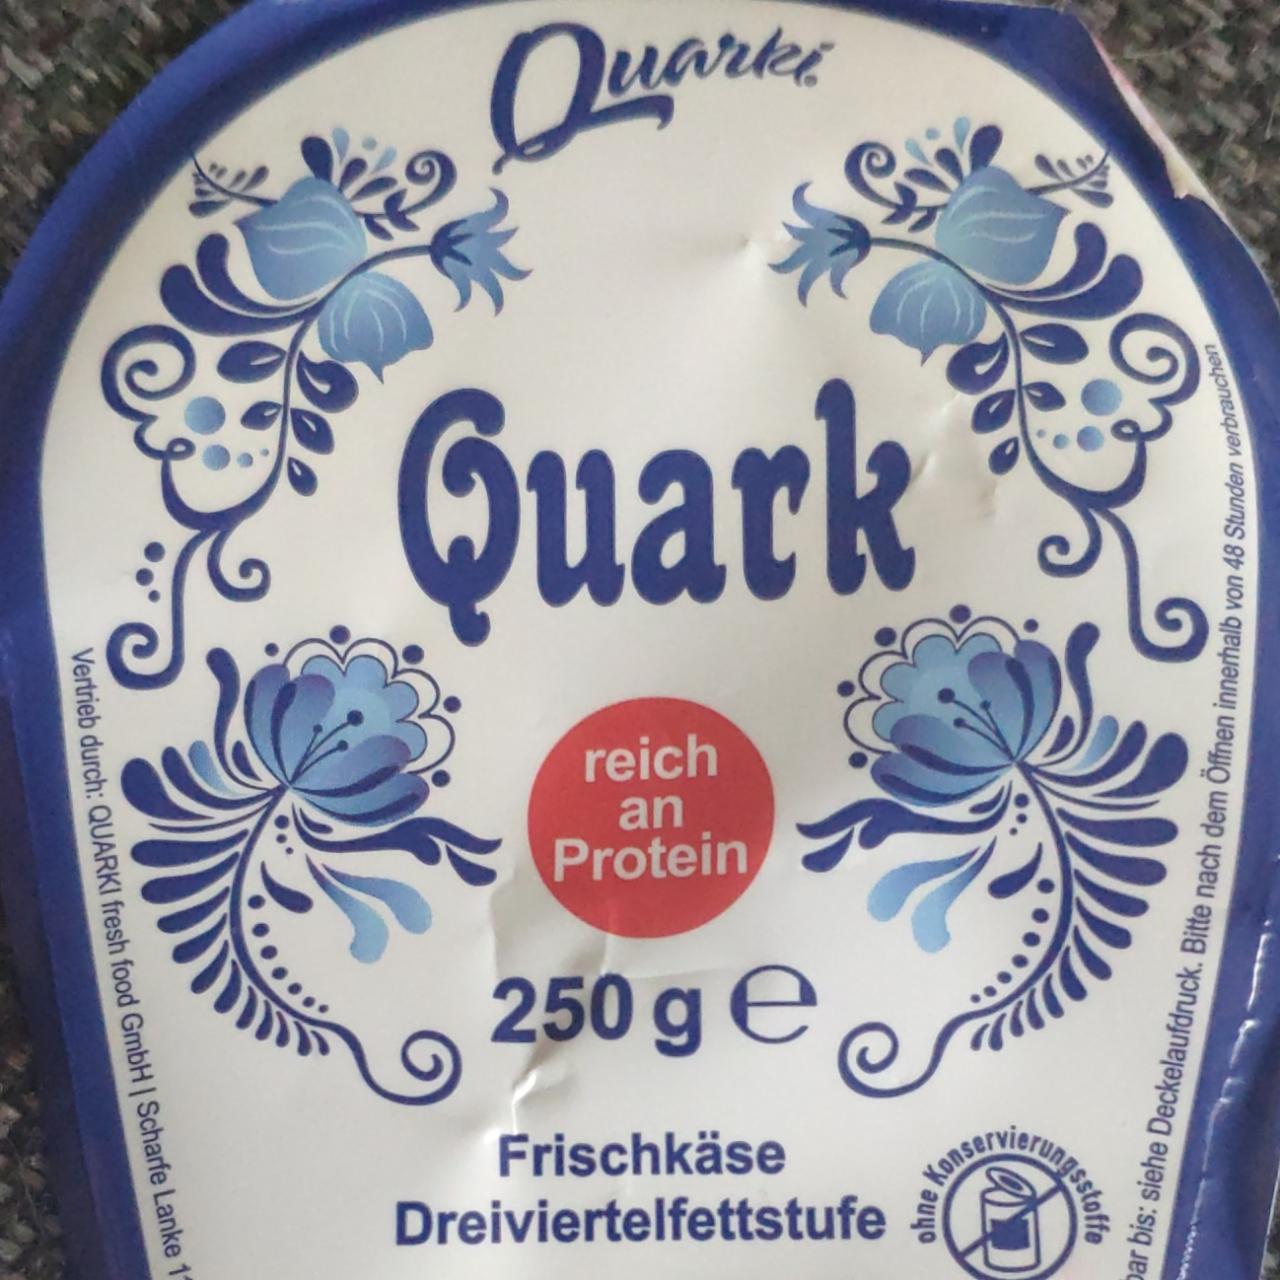 Zdjęcia - Quark Frischkase Dreivierteifettstufe